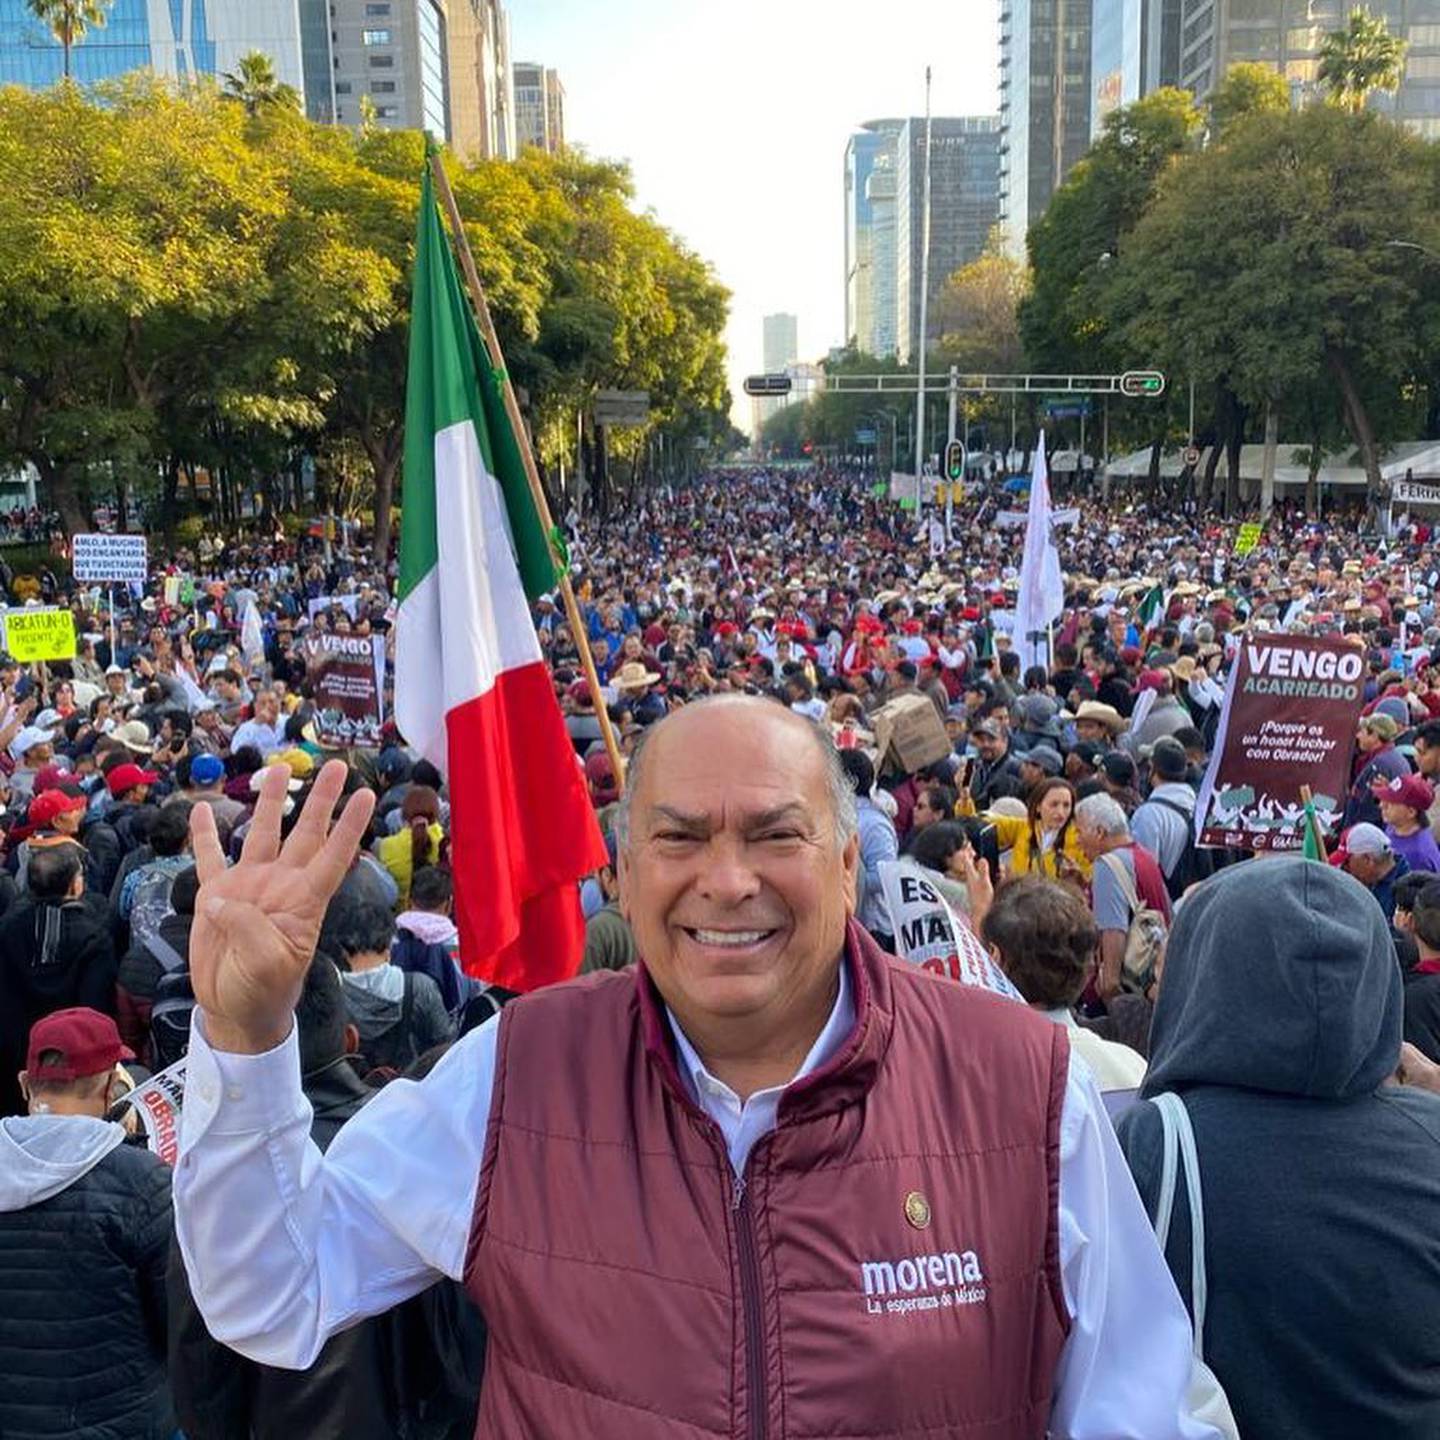 El diputado federal por Jalisco Antonio Pérez Garibay, quien ha destapado sus intenciones por contender por la gubernatura de su estado próximamente, estuvo presente en la llamada "Marcha del pueblo" (Foto: Facebook)